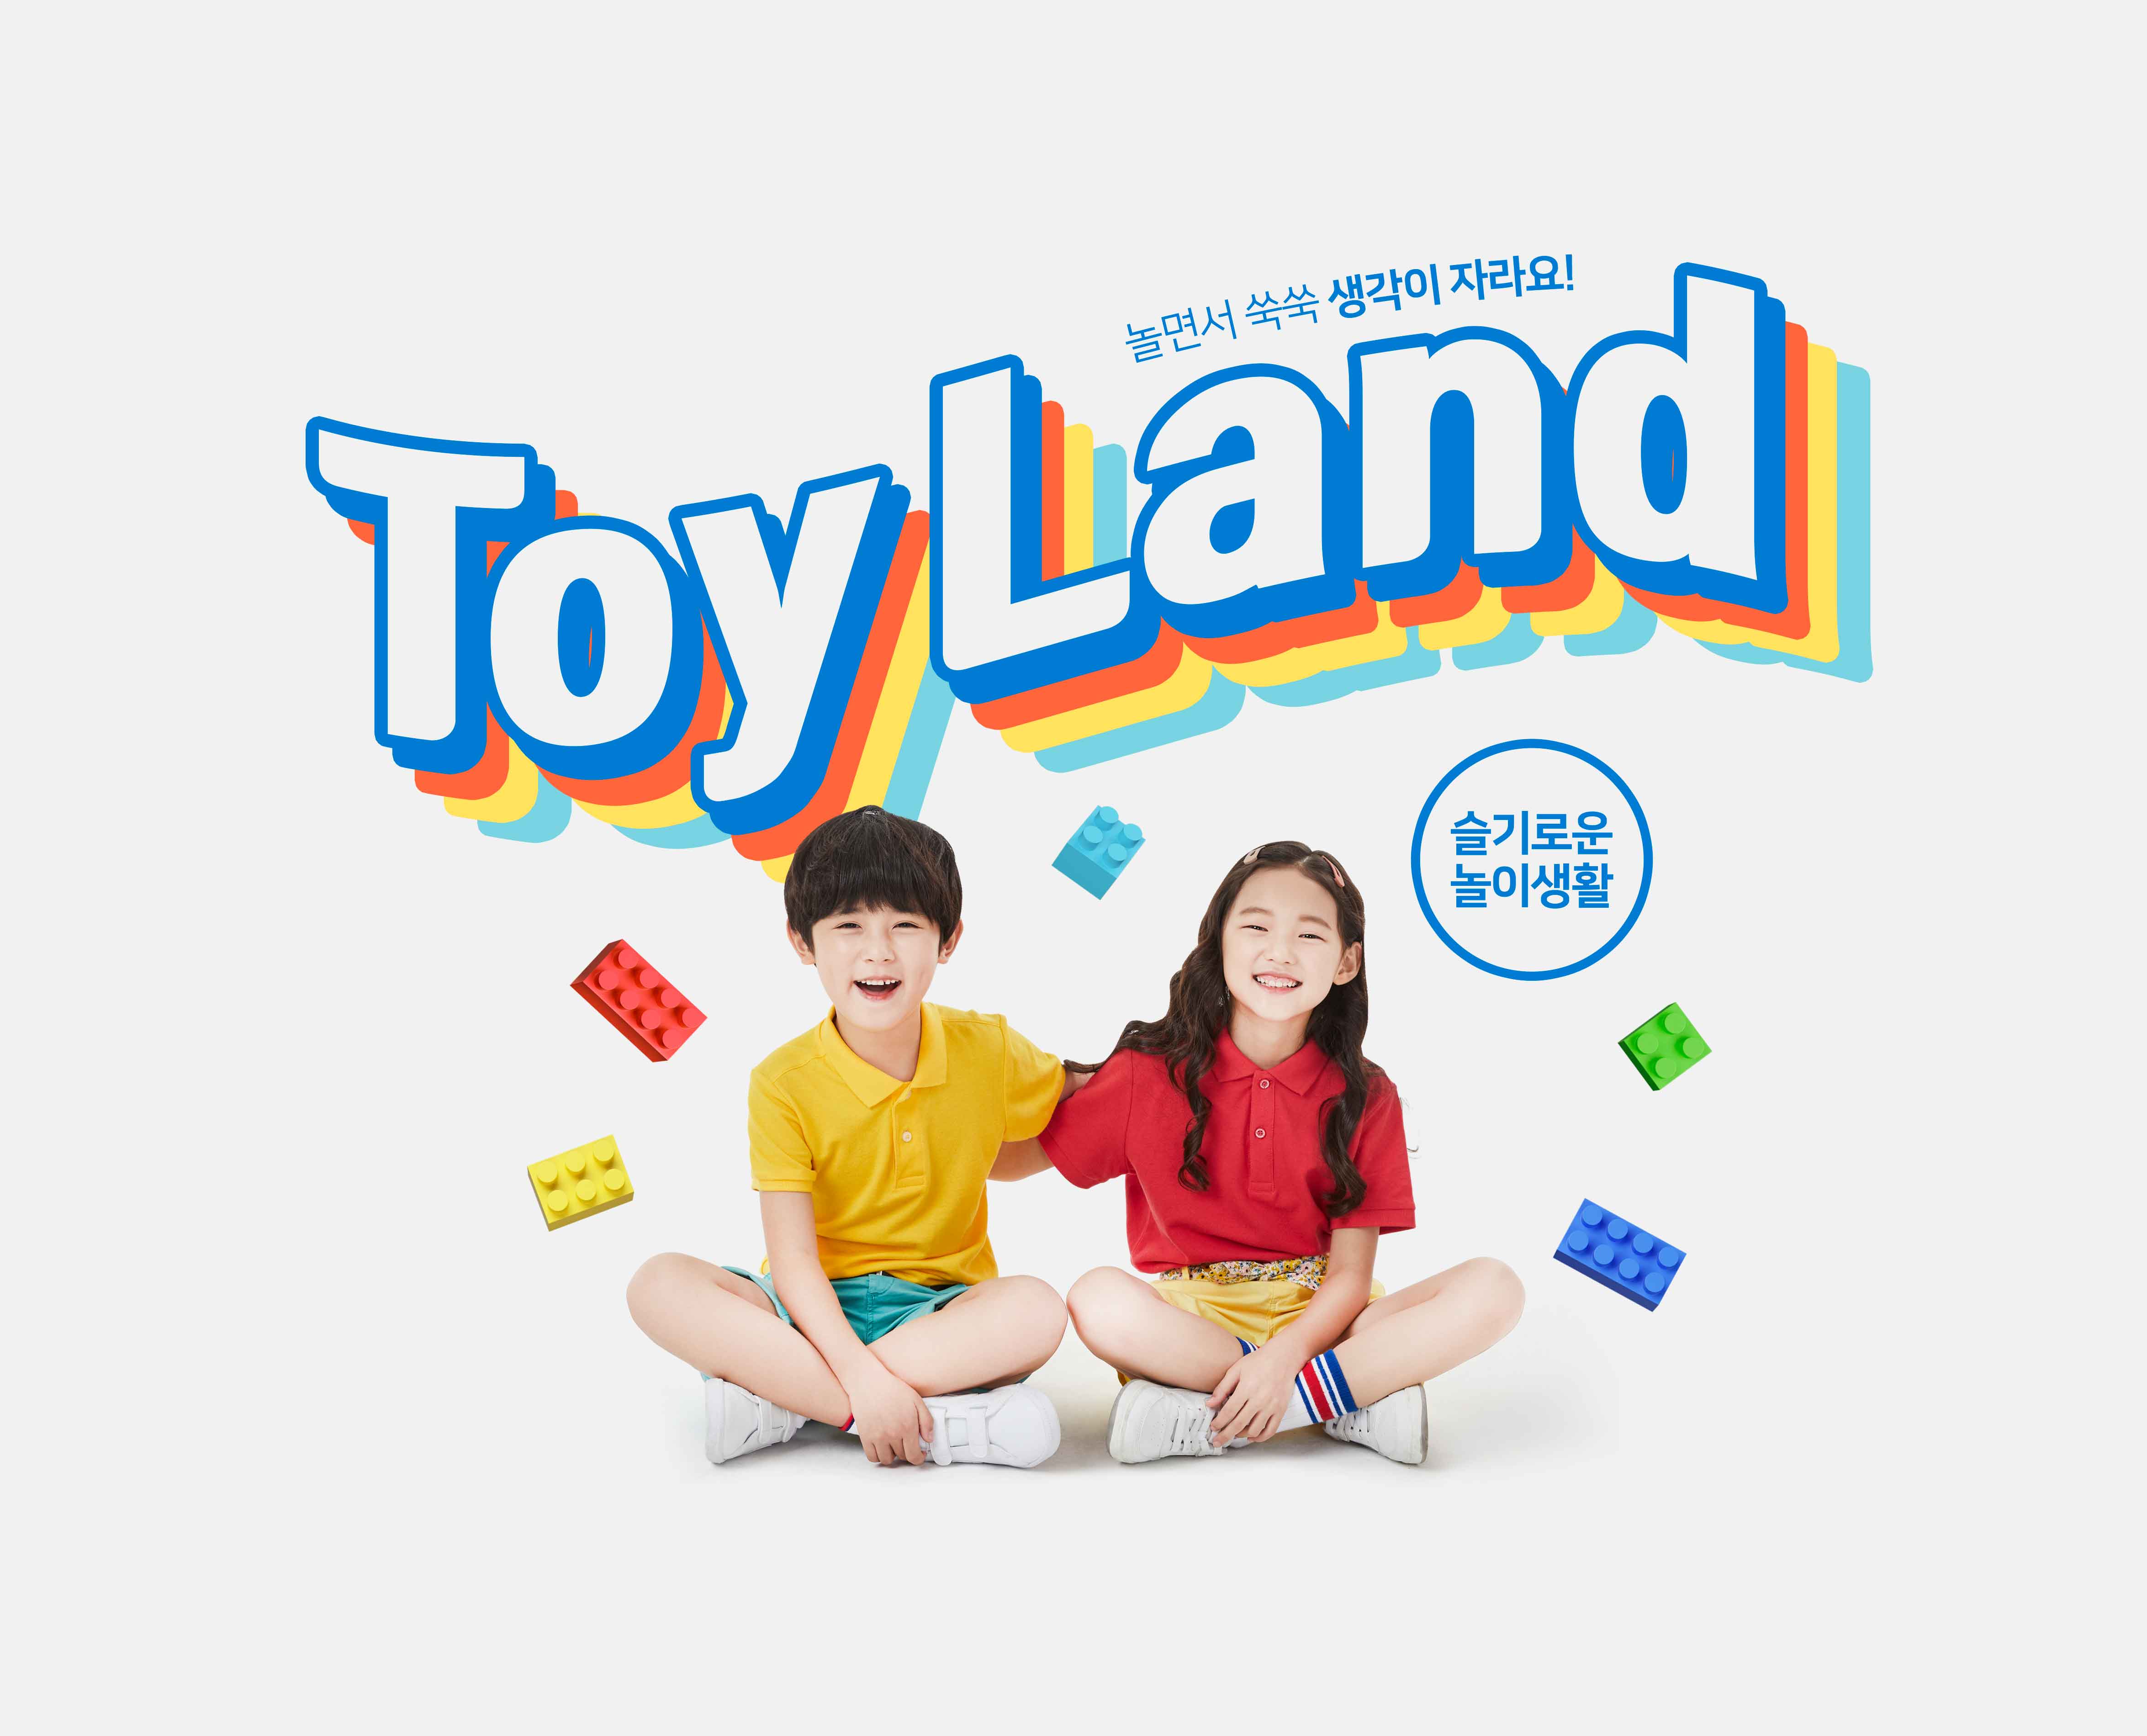 益智积木玩具游戏儿童成长主题海报PSD素材素材中国精选韩国素材插图